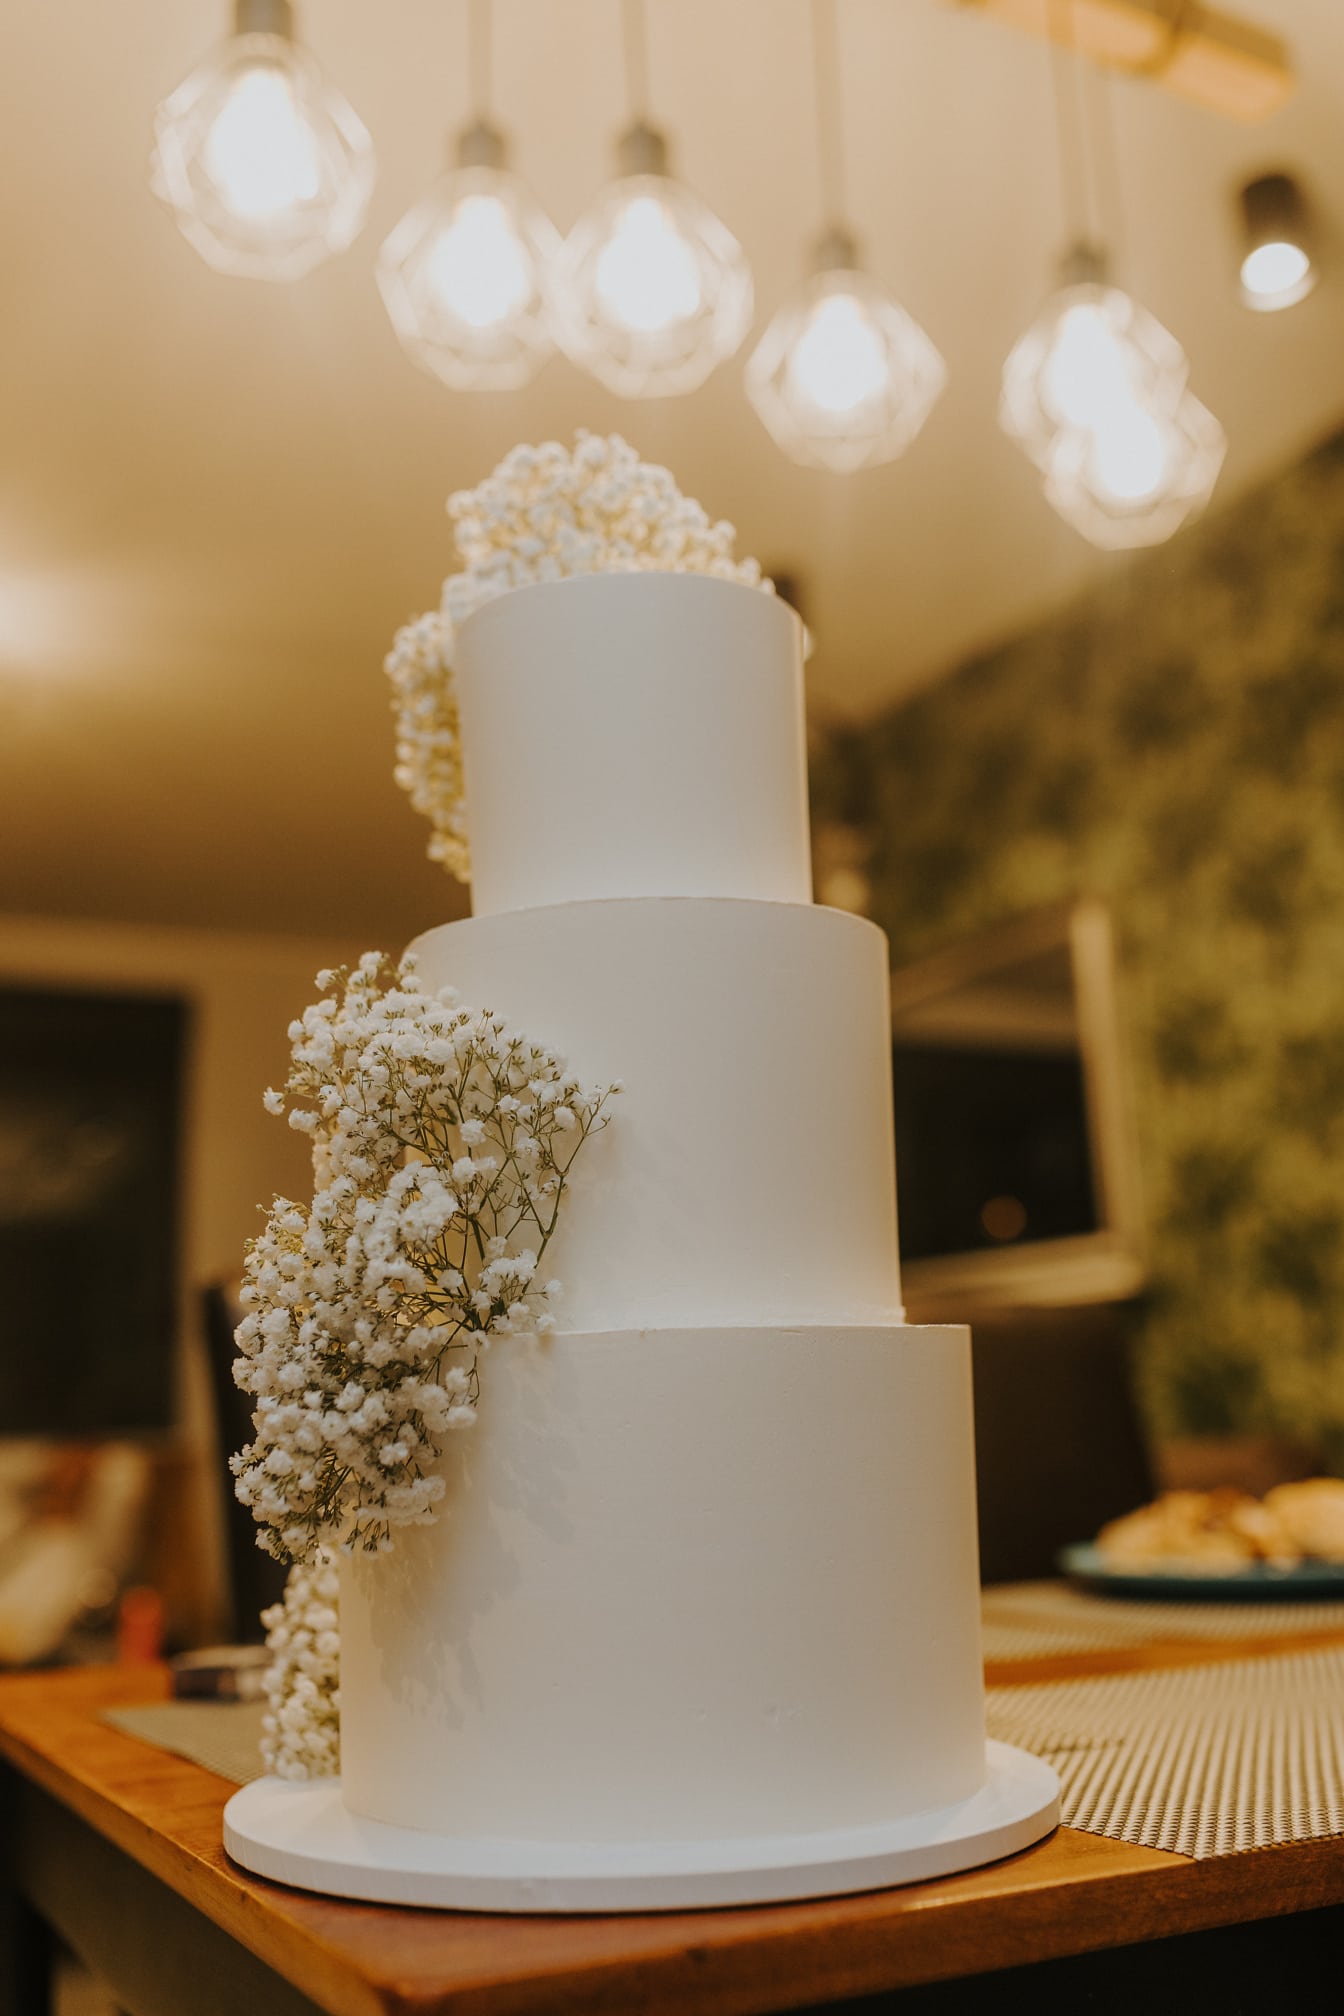 Kue pengantin putih tiga tingkat dengan bunga di atasnya